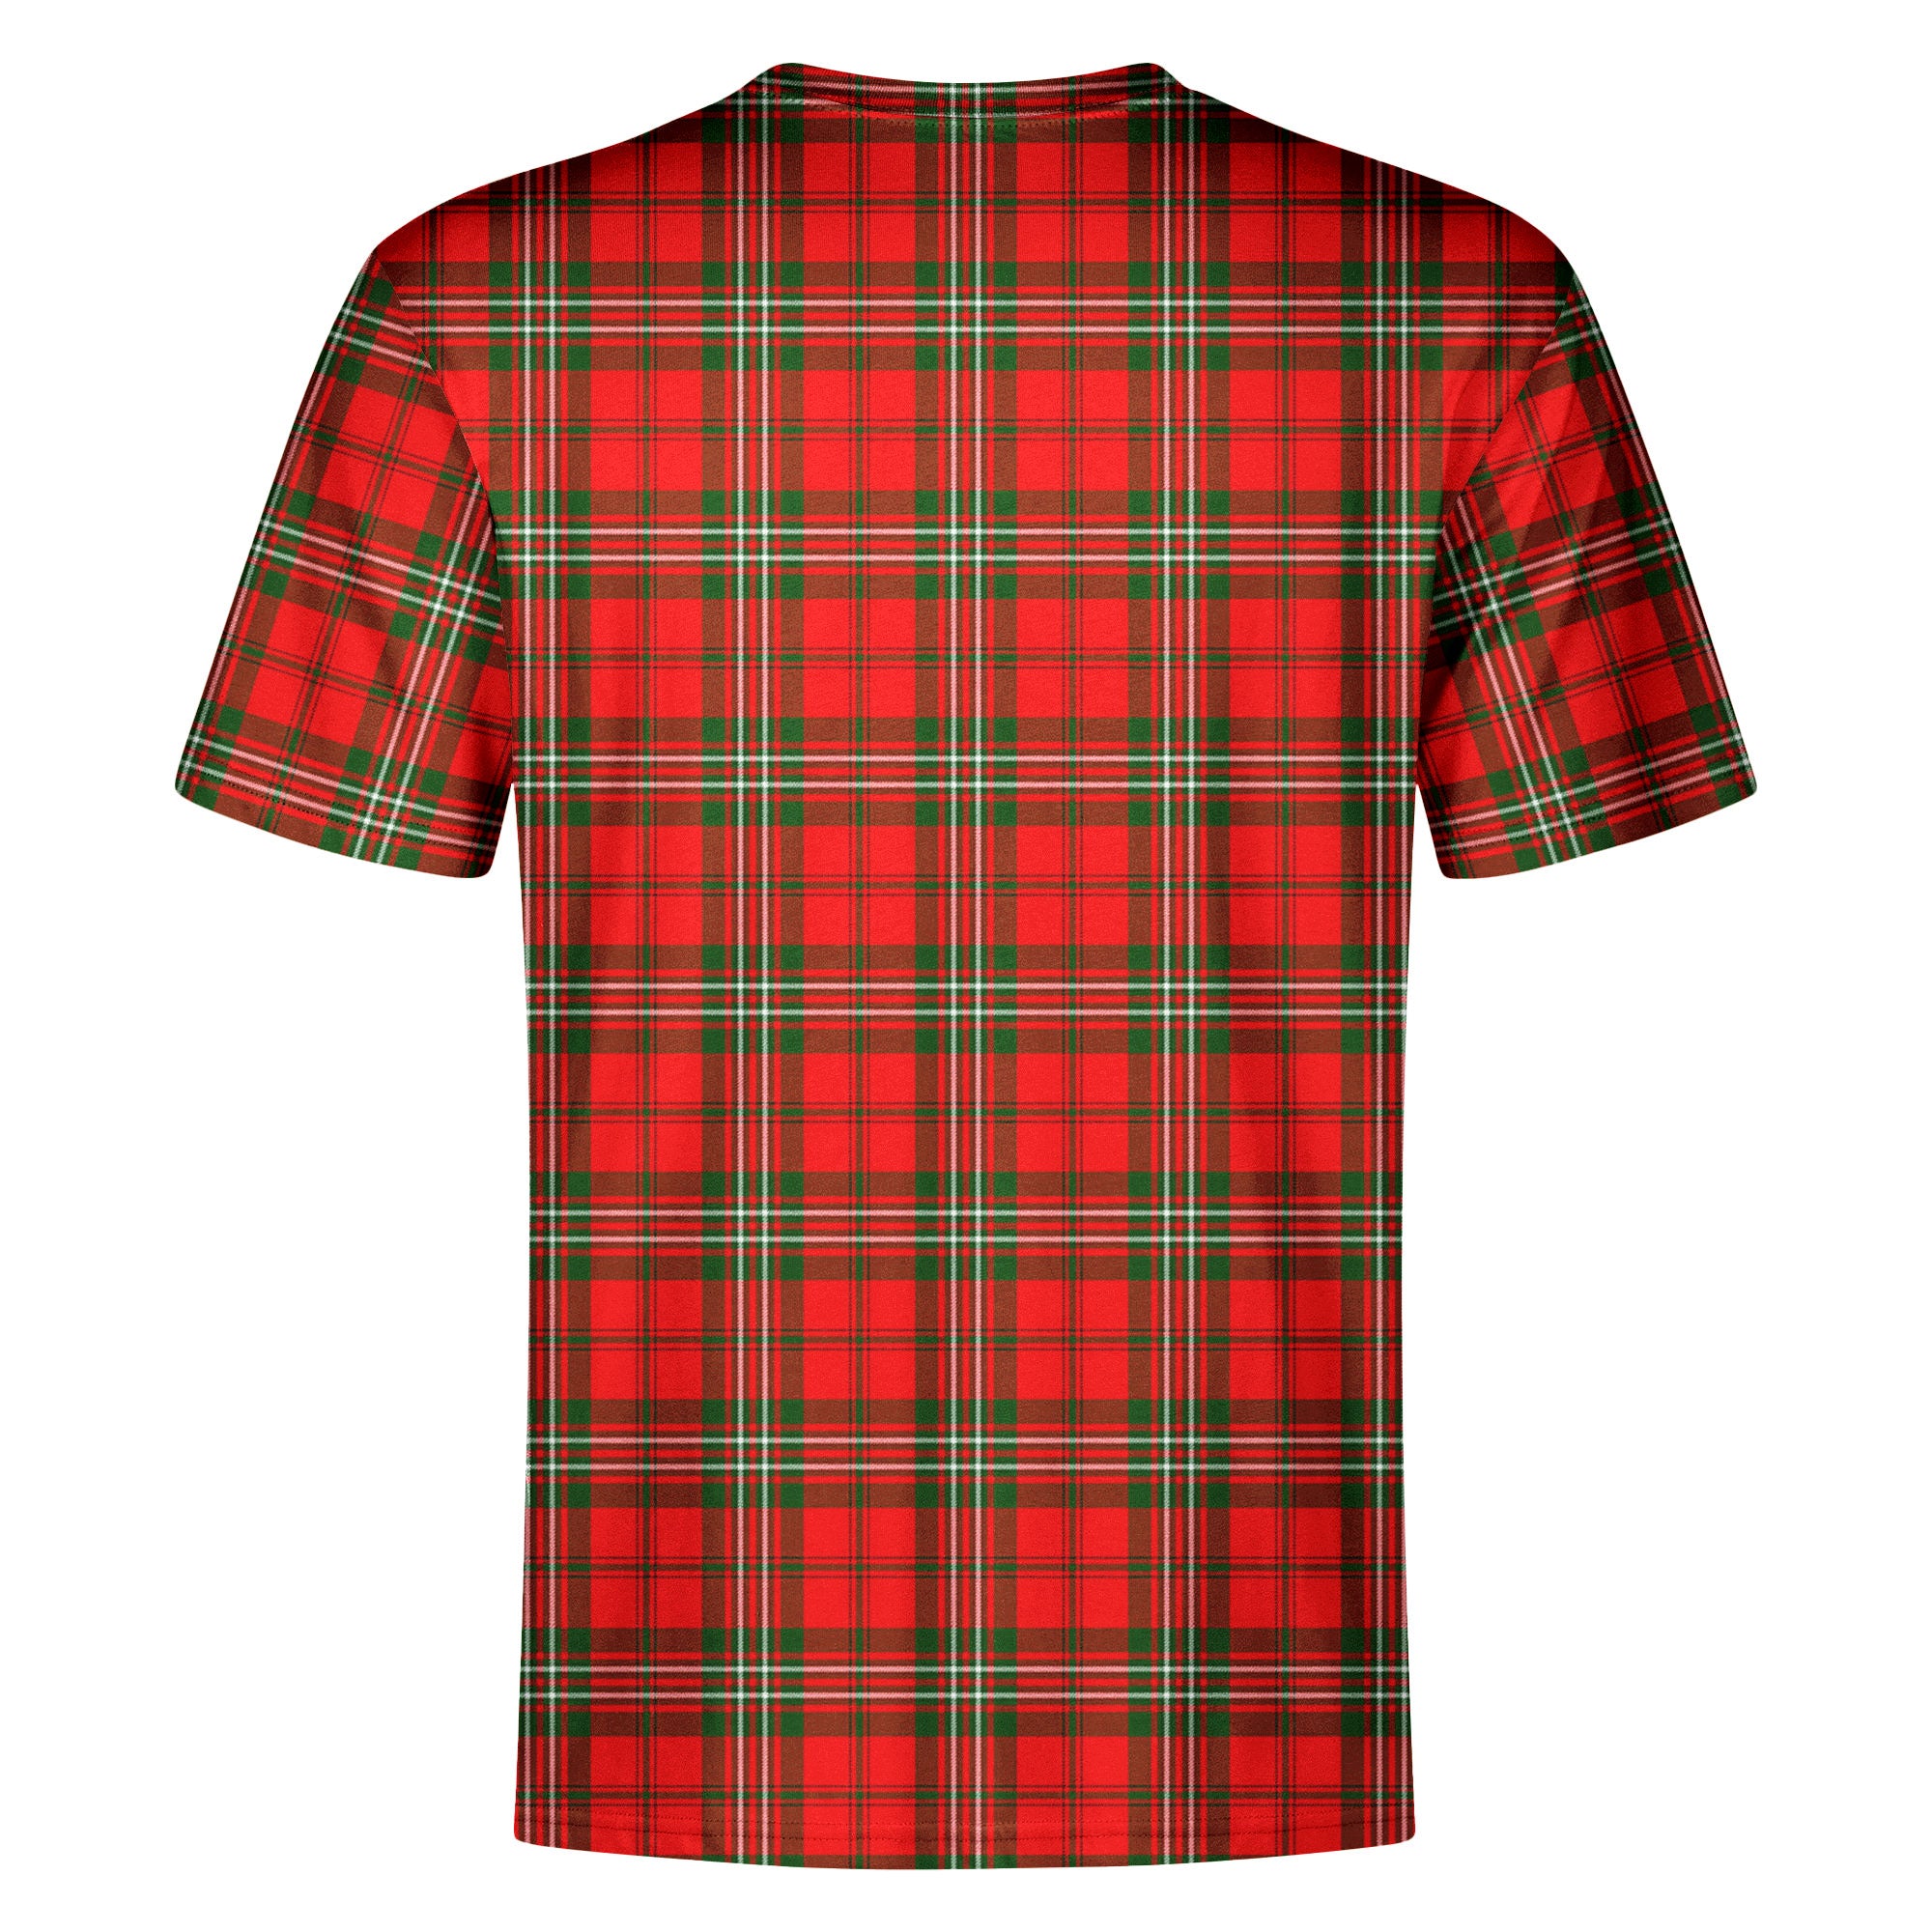 Langlands Tartan Crest T-shirt